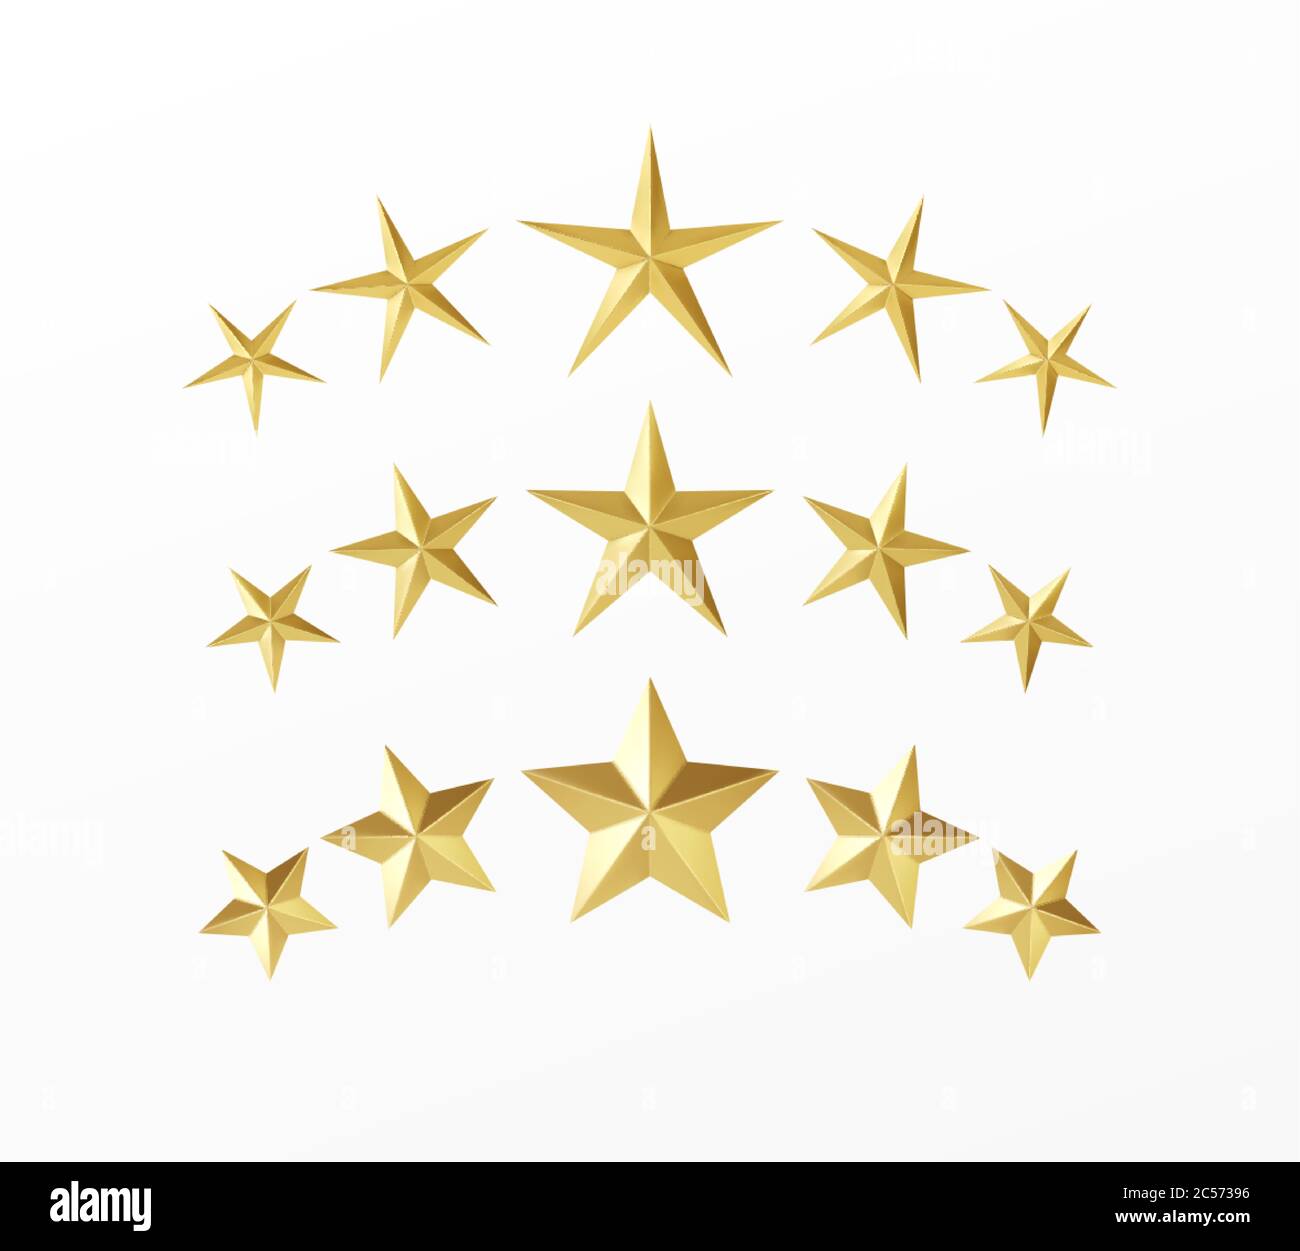 Set von goldenen realistischen Sternen mit verschiedenen Strahlen isoliert auf einem weißen Hintergrund. Vektorgrafik Stock Vektor